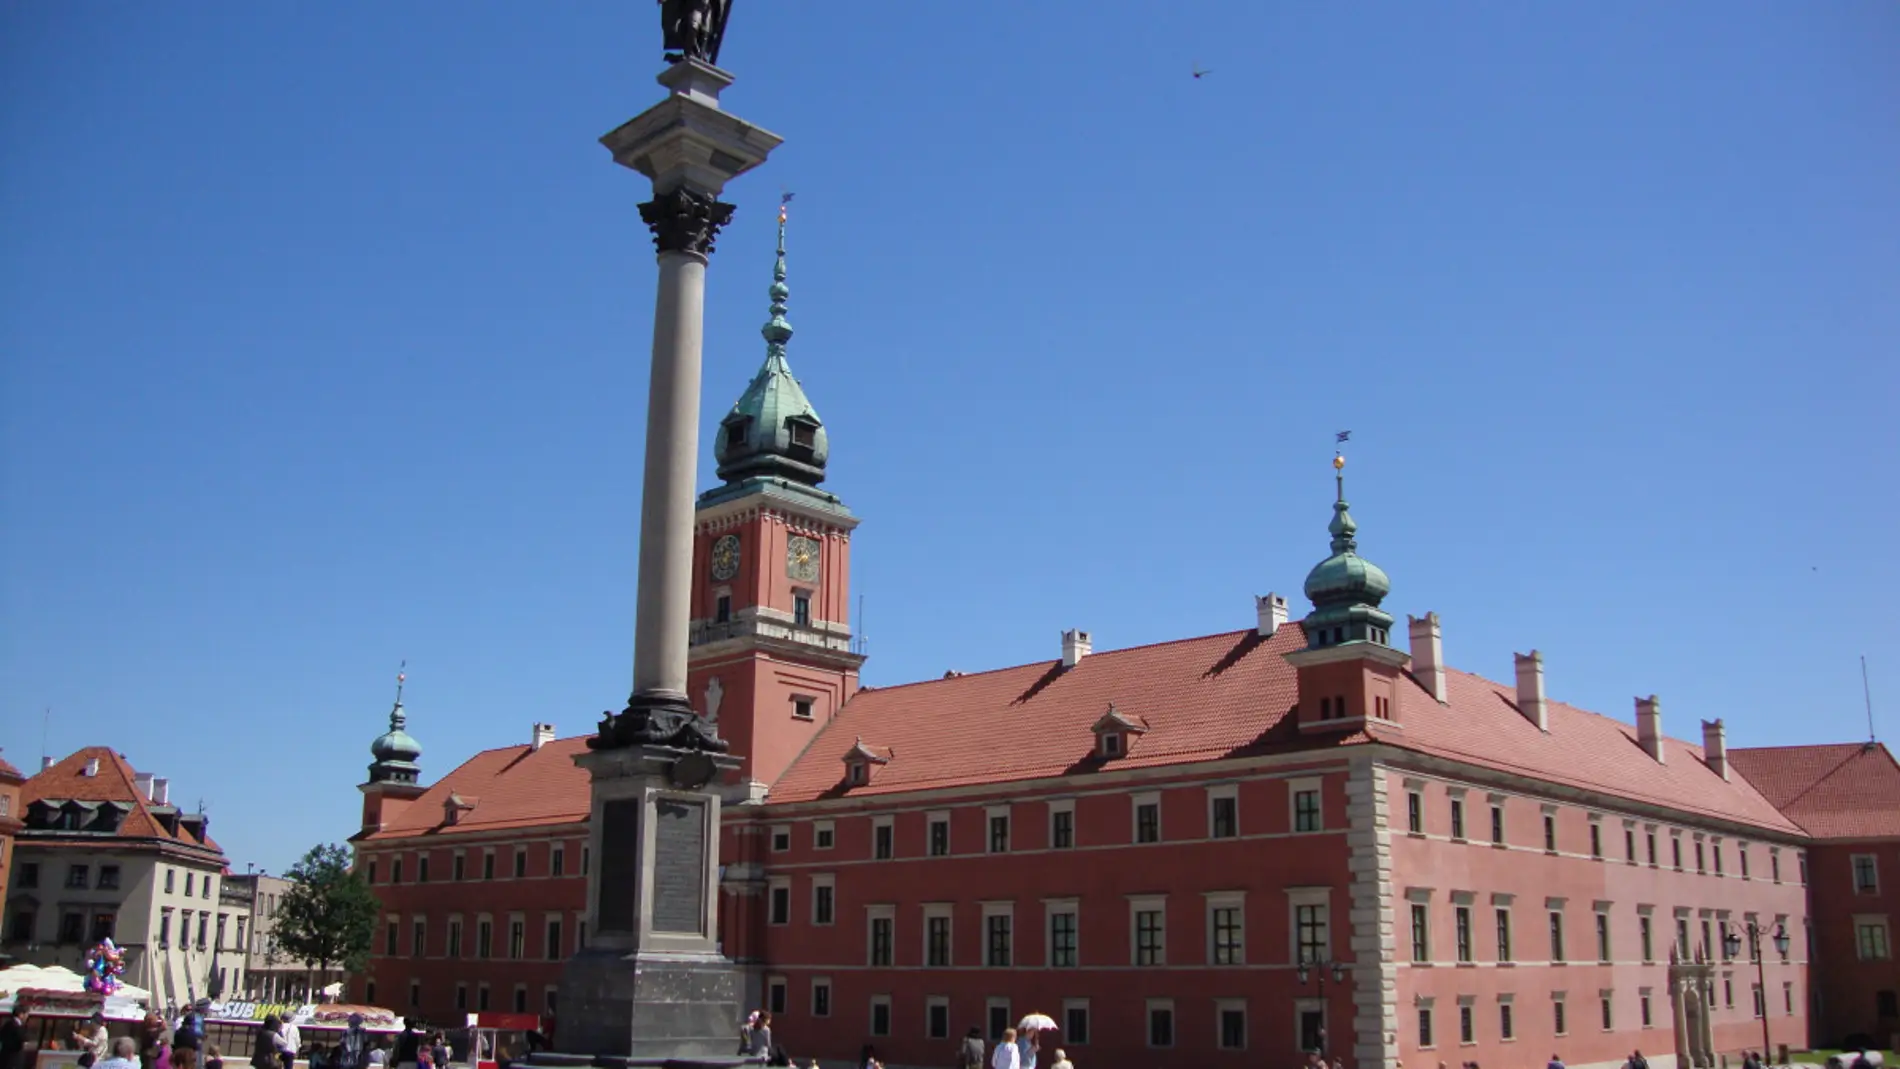 Columna de Segismundo de Varsovia: su curiosa historia y todo lo que debes saber